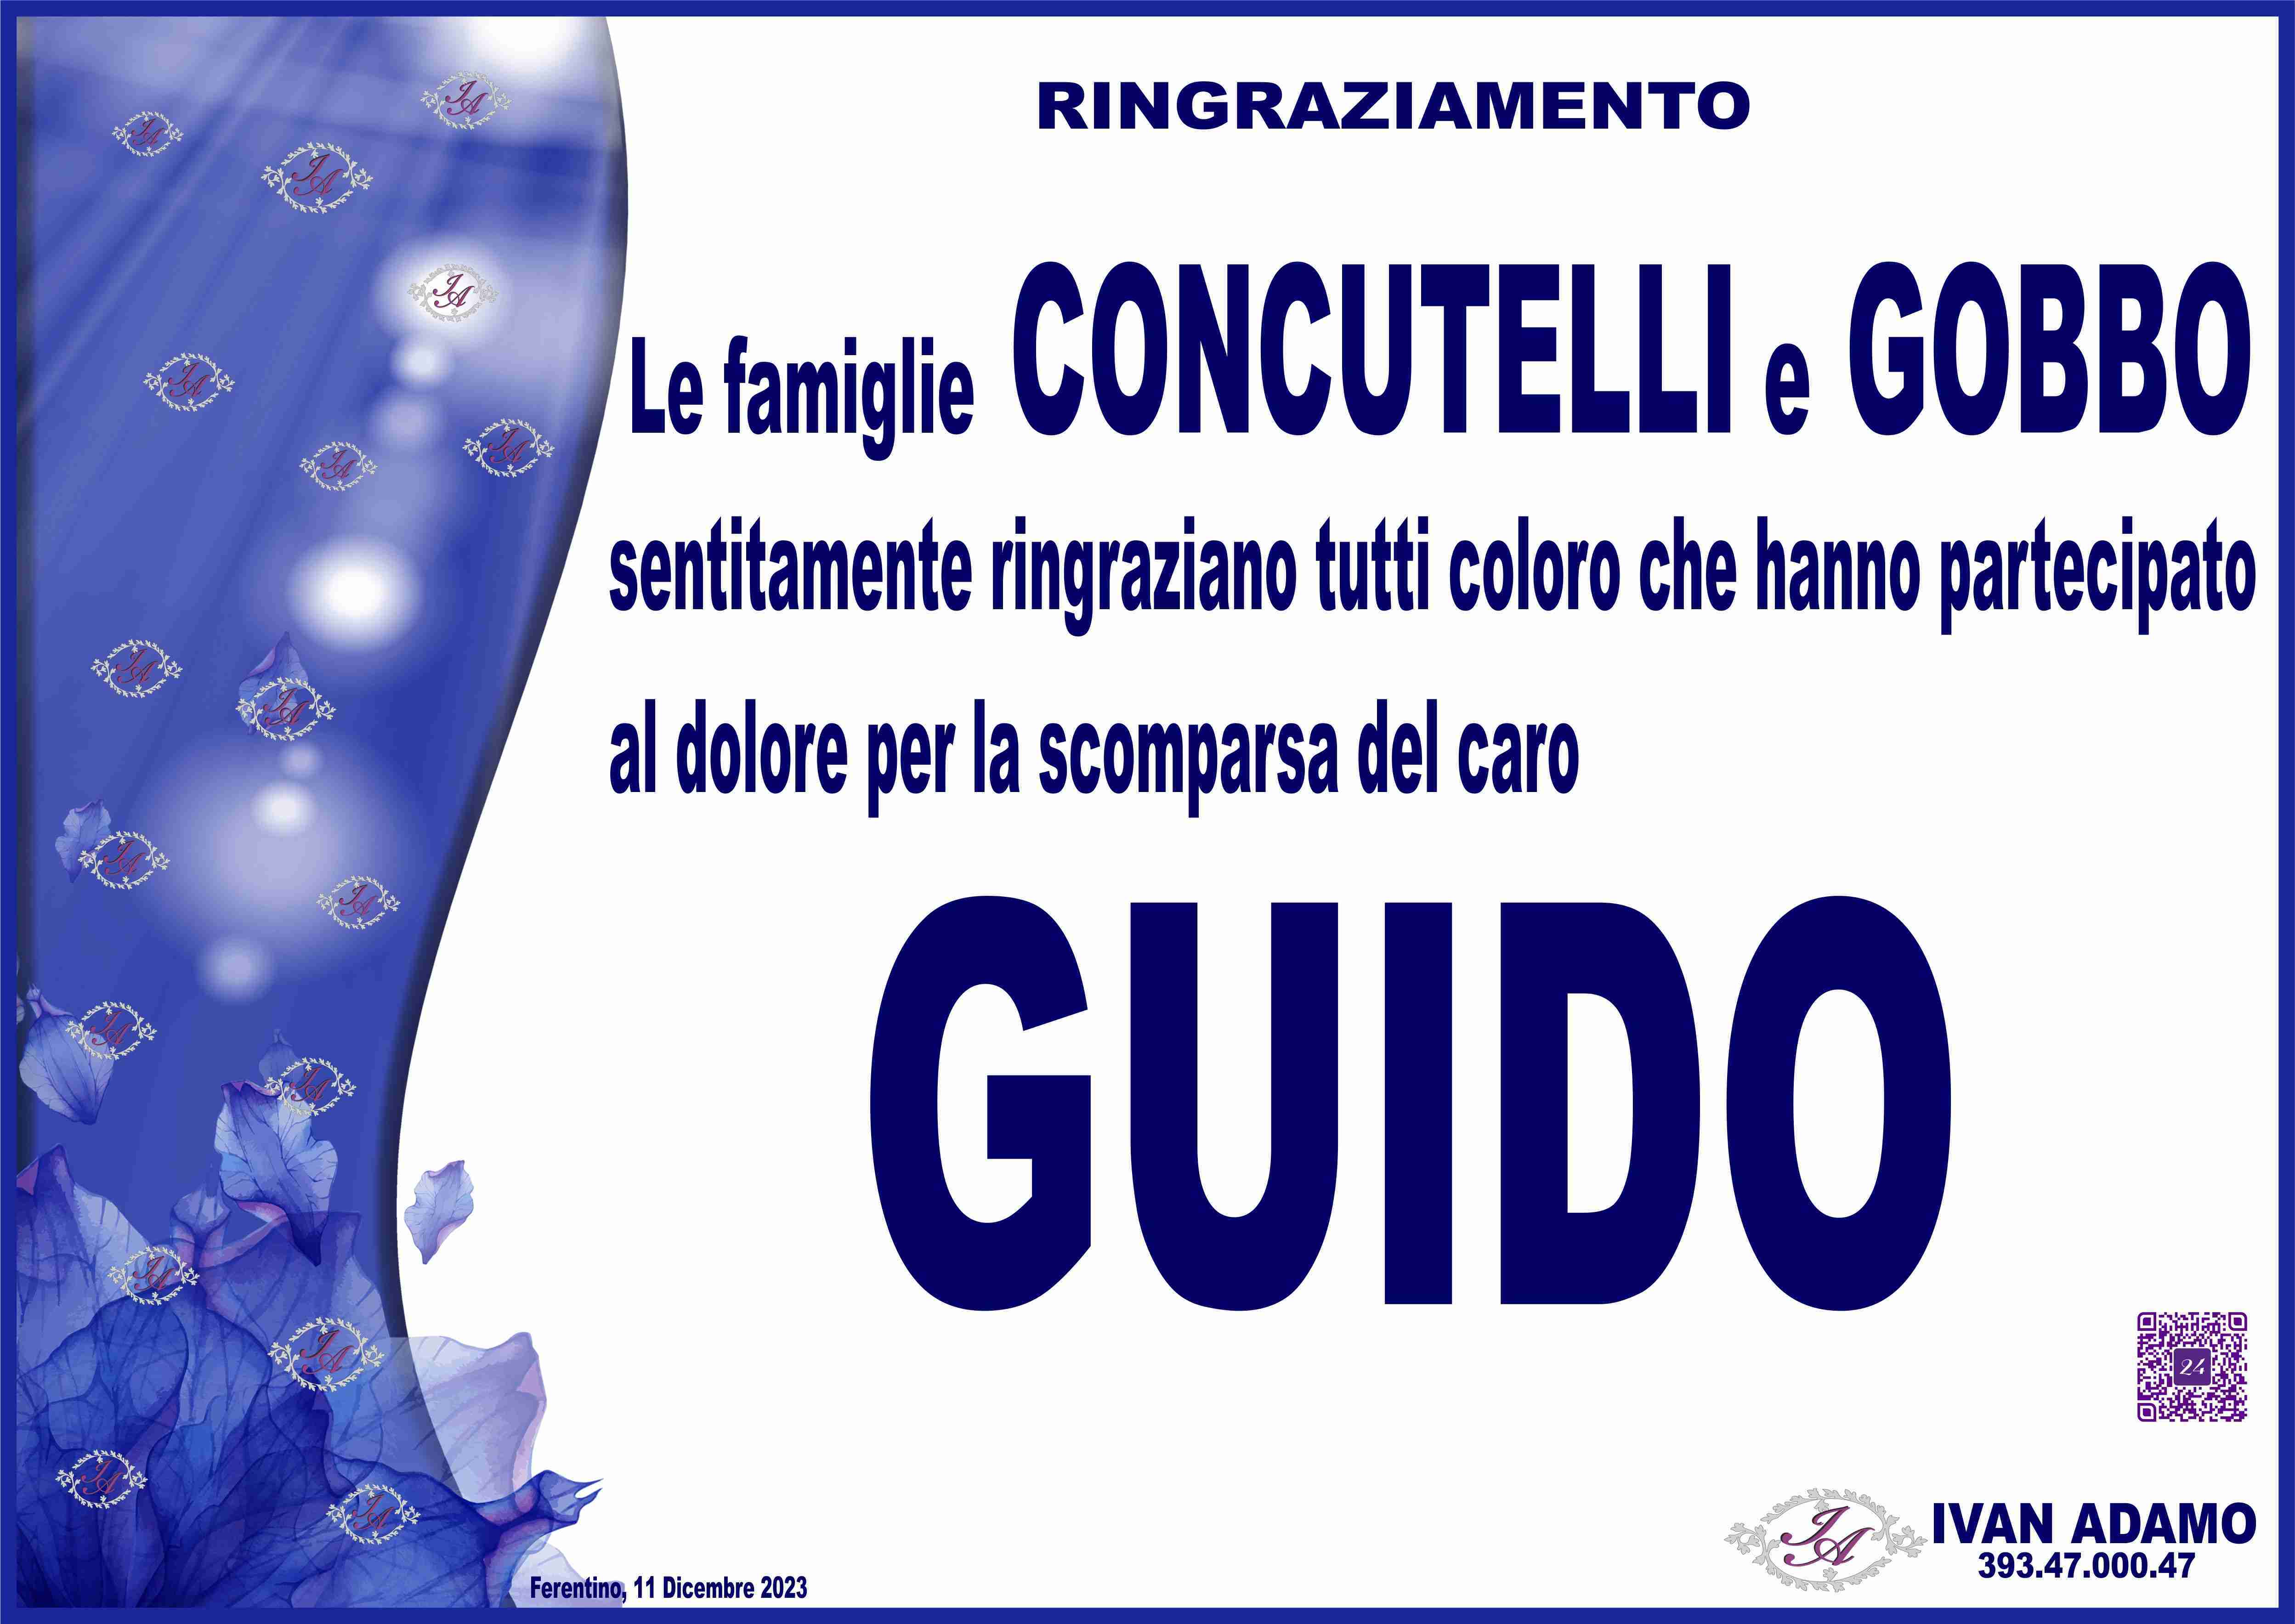 Guido Concutelli